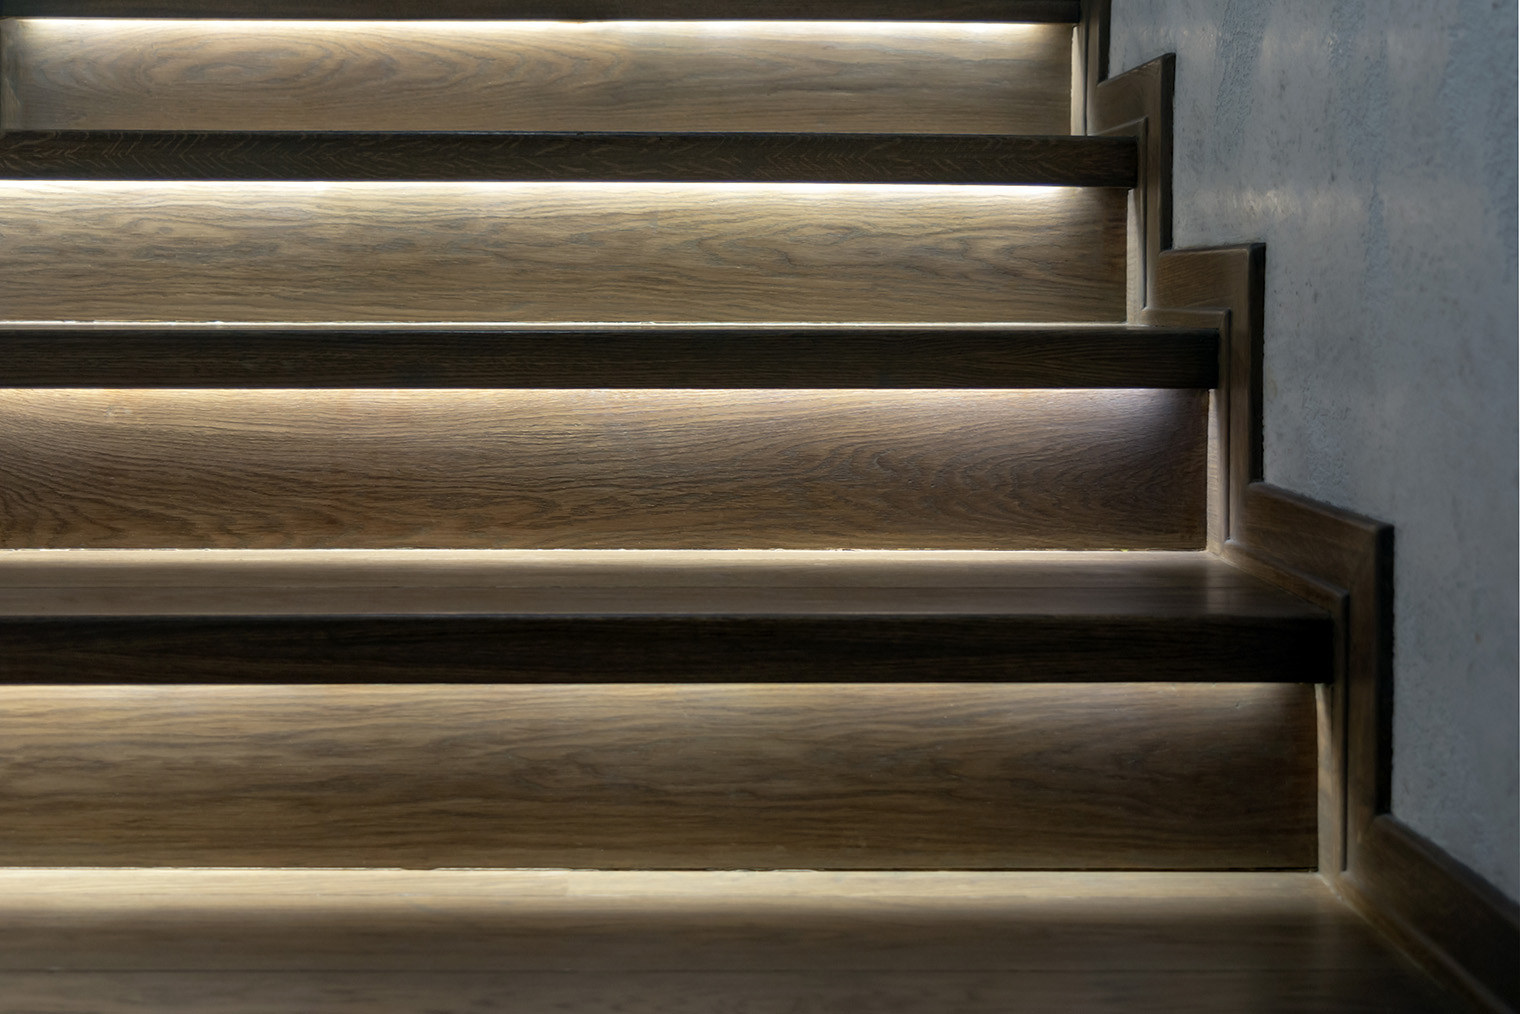 Контурная подсветка лестницы функциональна и выглядит эффектно. Помимо ступеней светодиодную ленту часто располагают вдоль перил. Фотография: NikiON / Shutterstock / FOTODOM